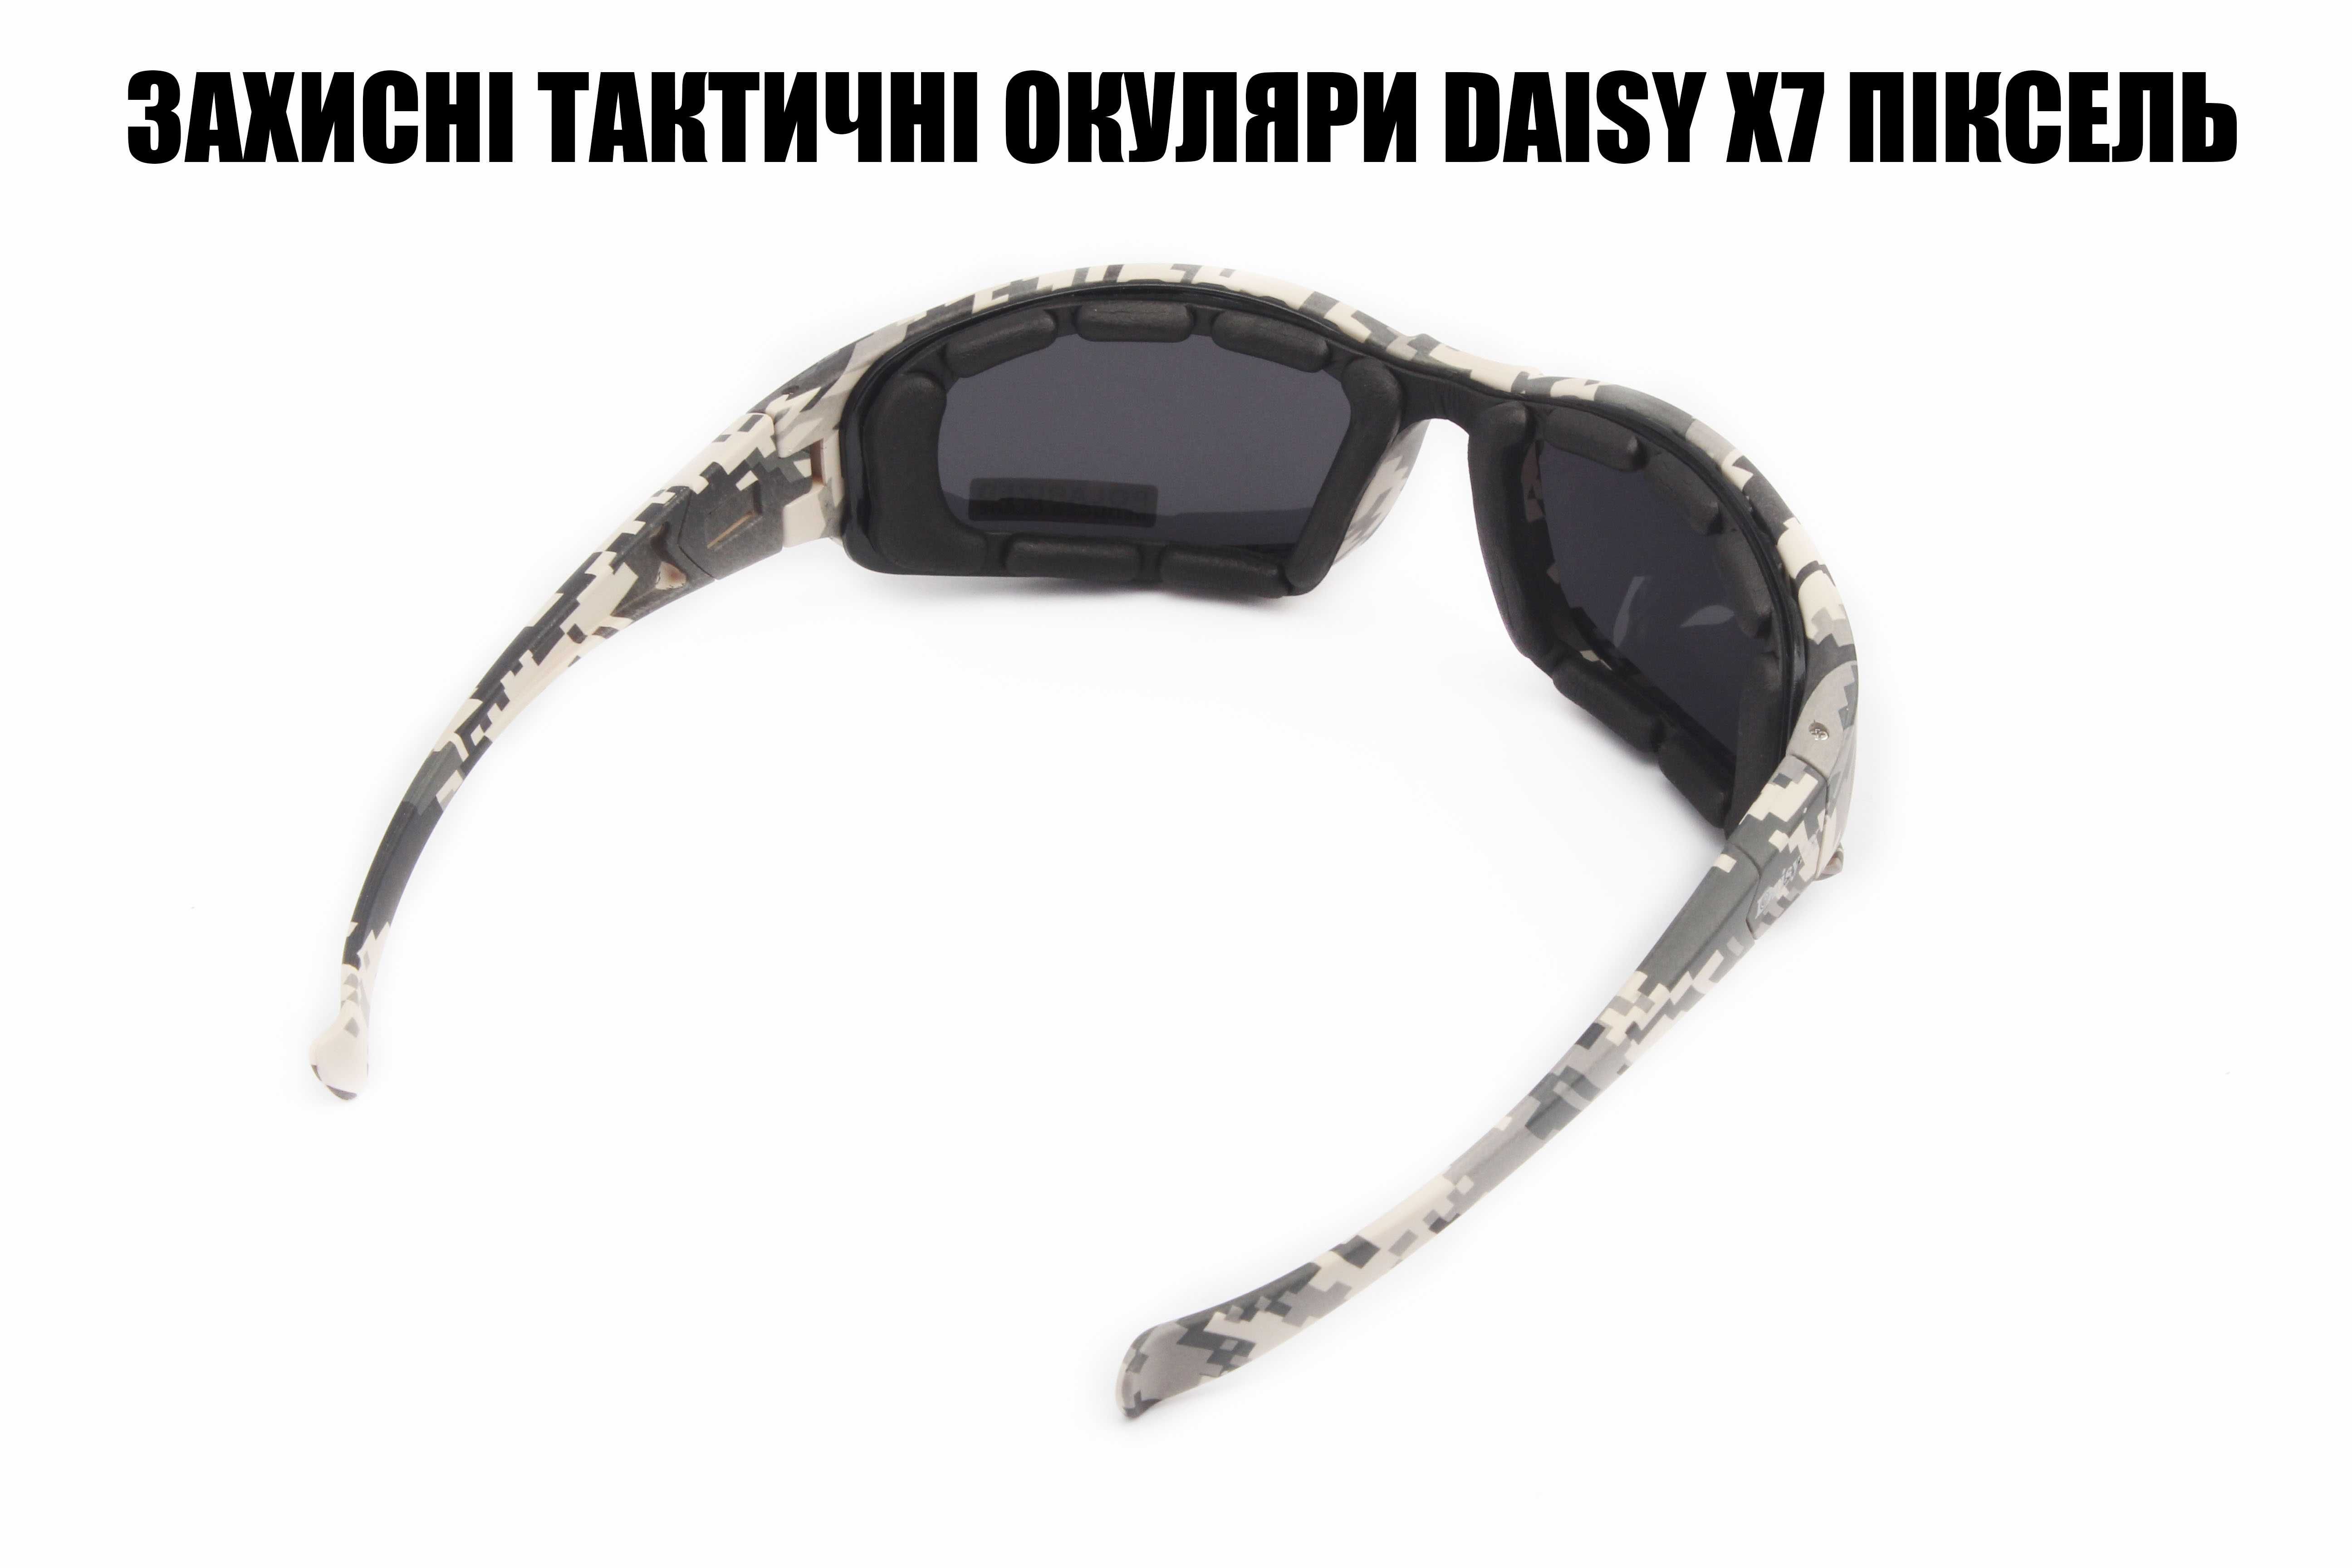 Тактические солнцезащитные очки Daisy X7 пиксель есть опт и дроп